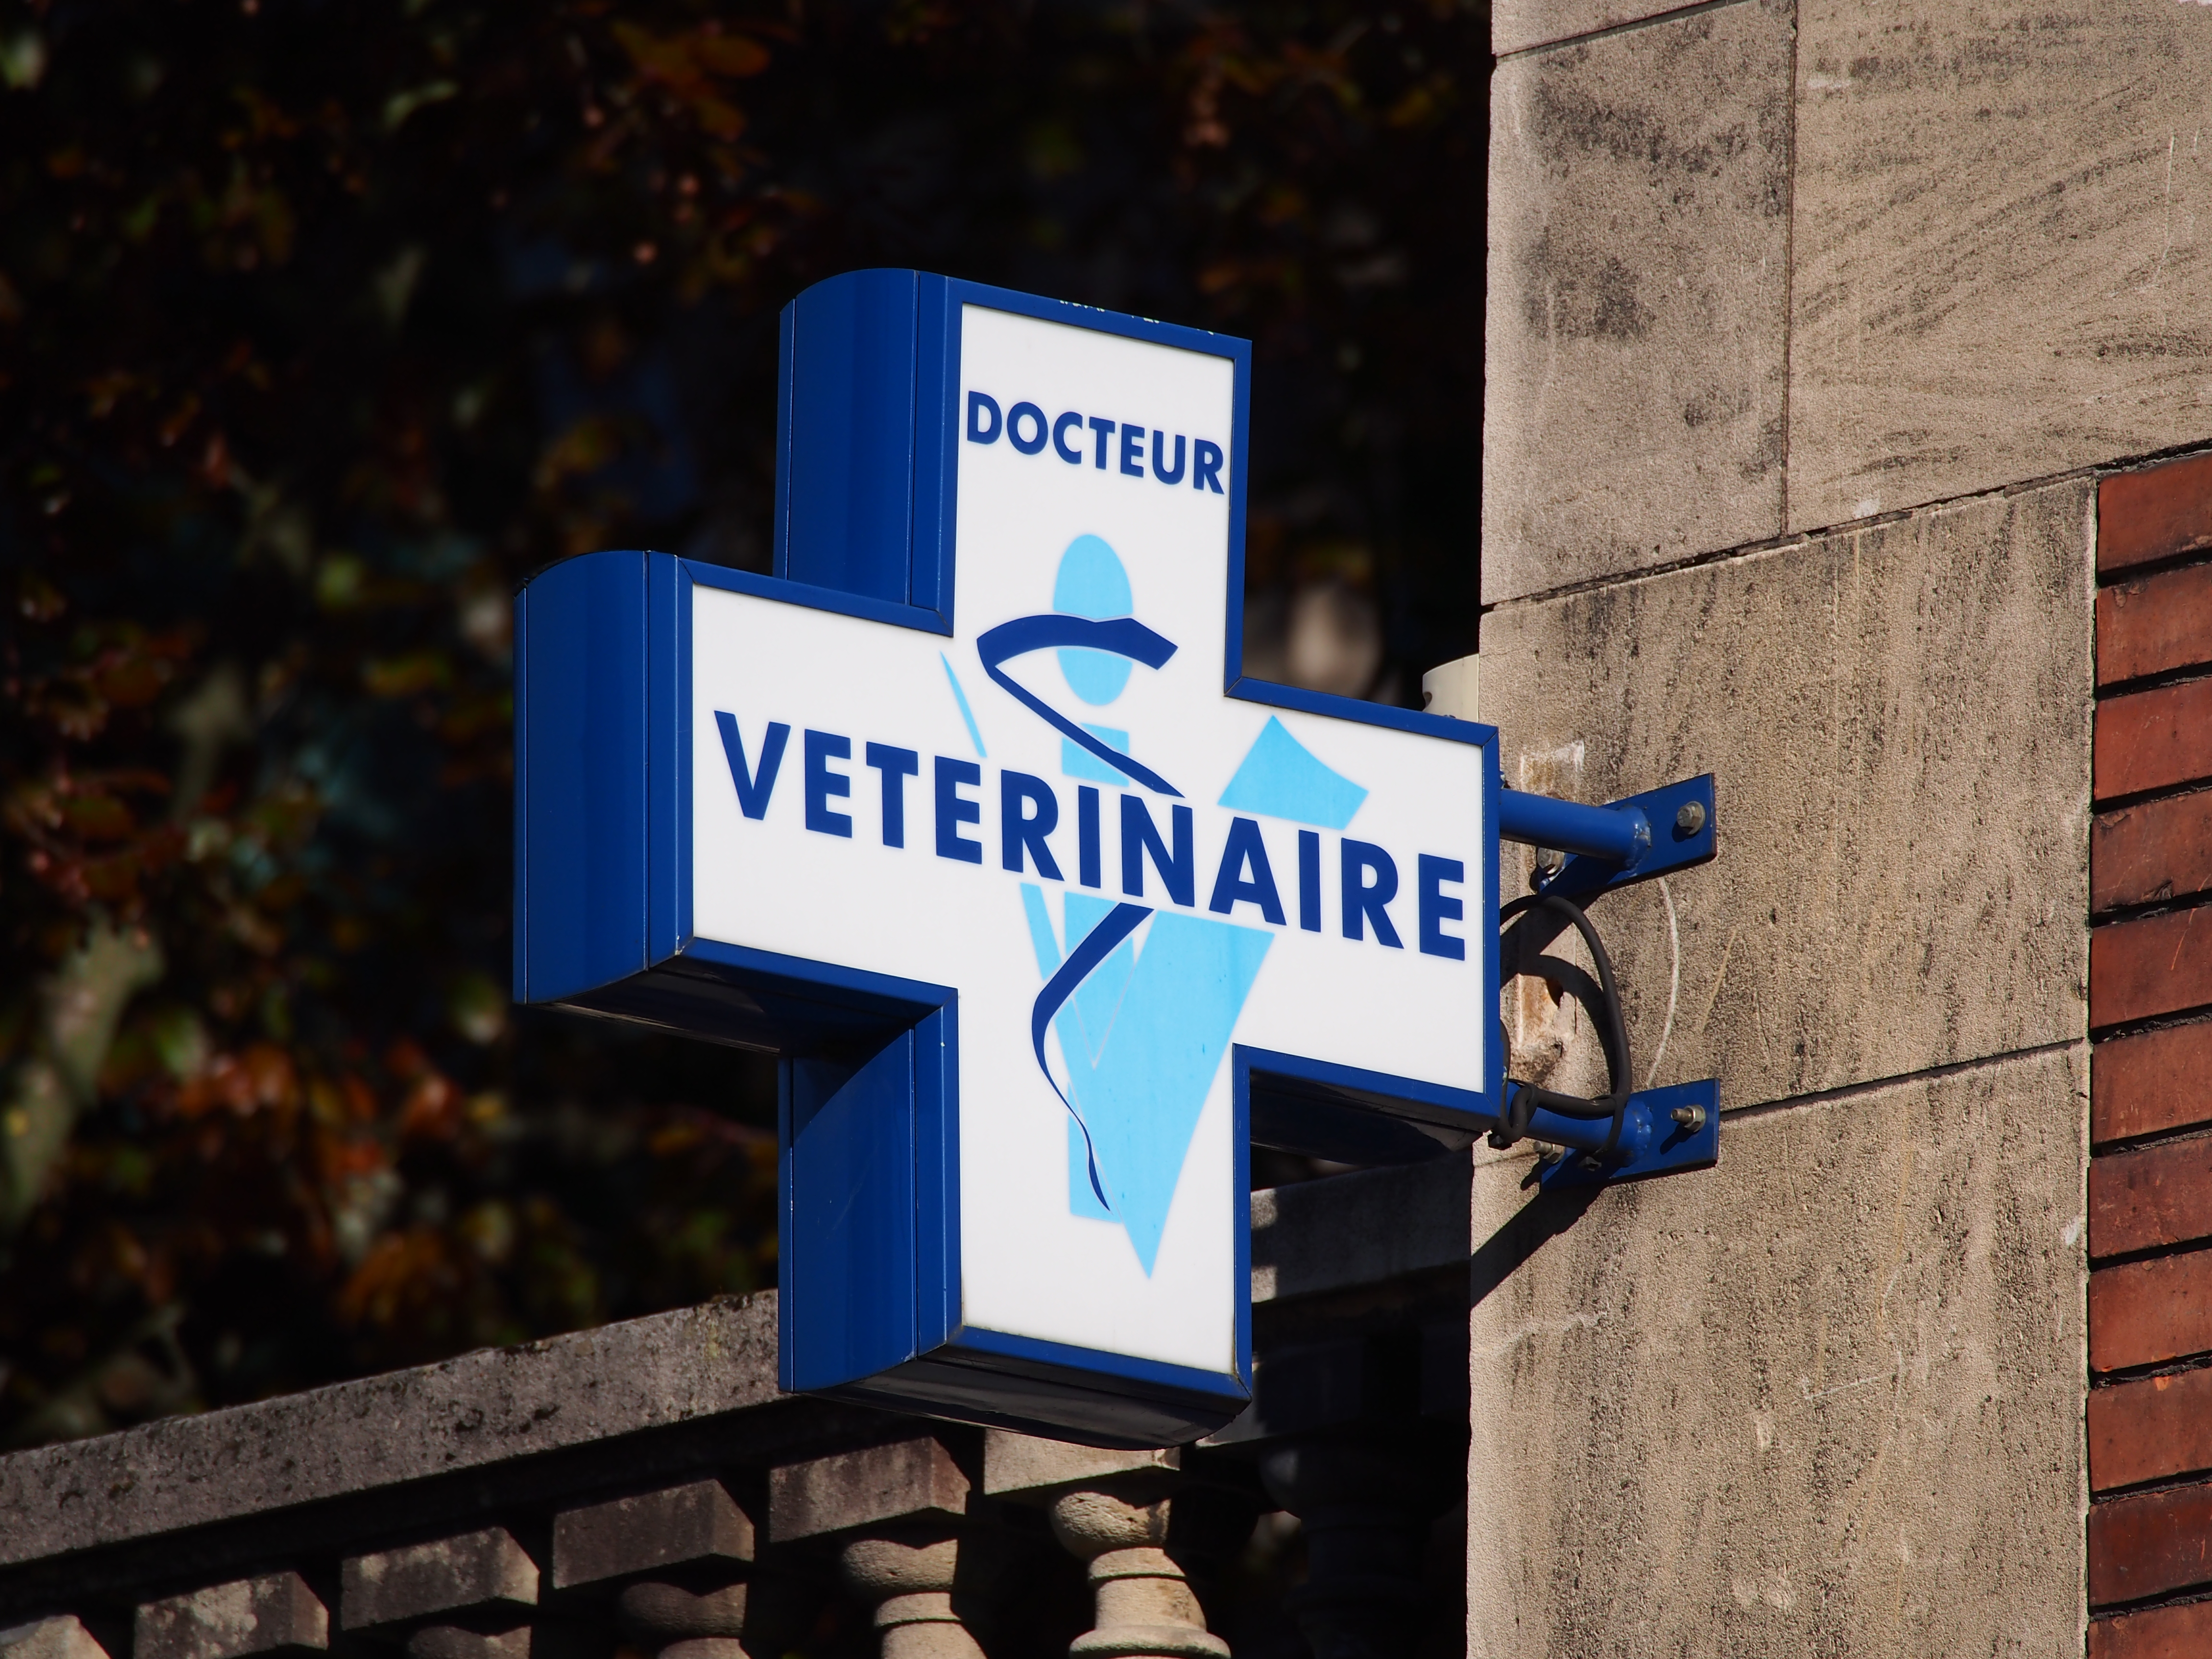     Une femme poursuit une clinique vétérinaire après la mort de son chien

